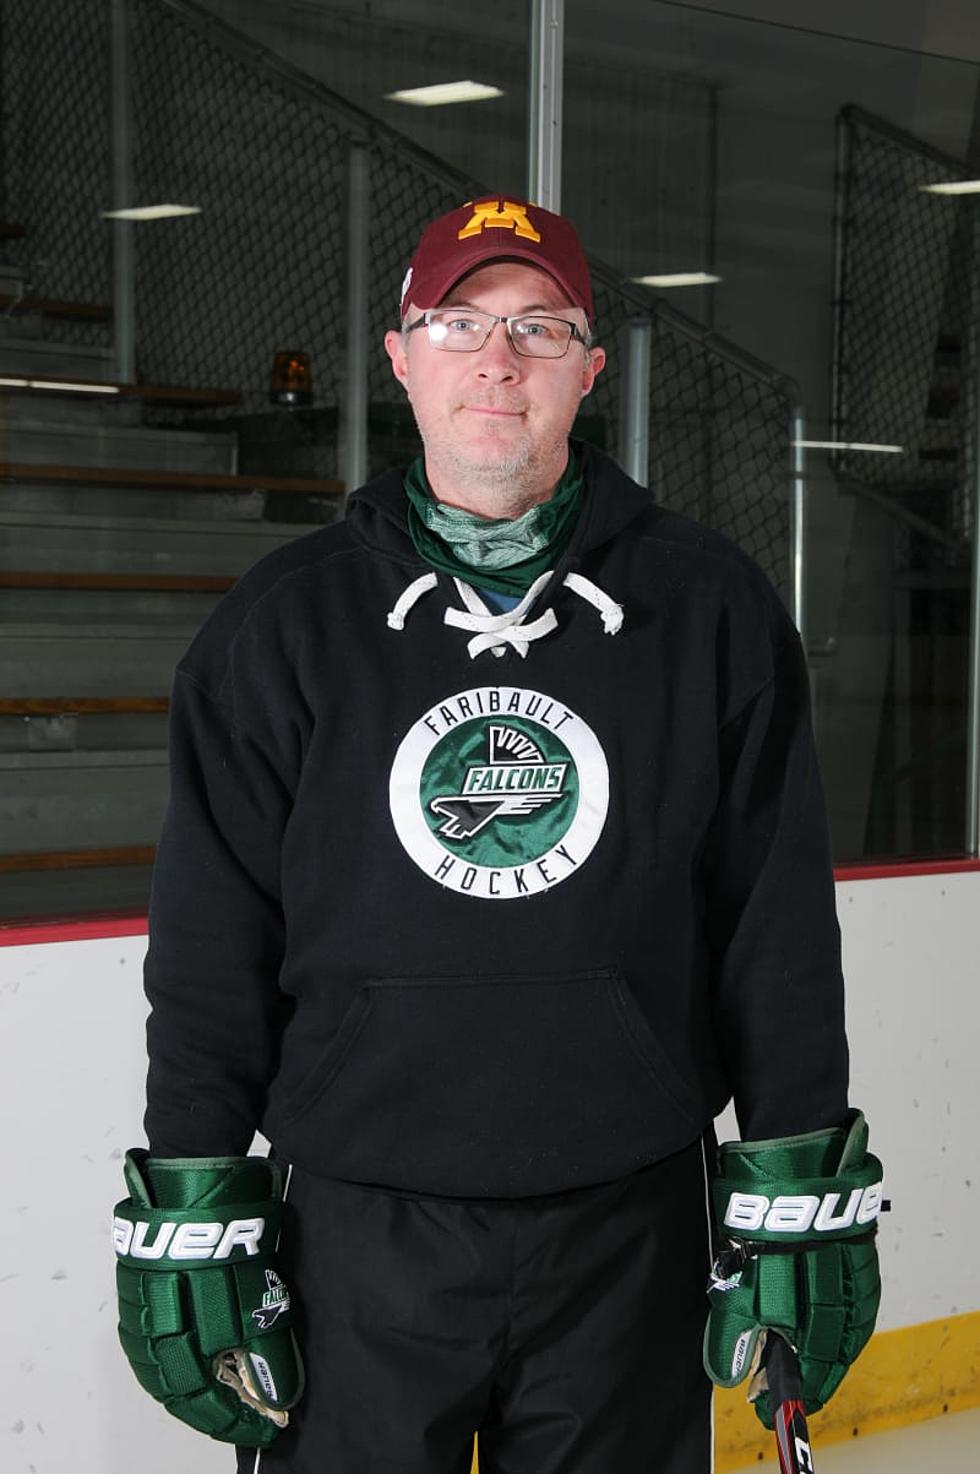 Faribault High School Announces New Head Boys Hockey Coach